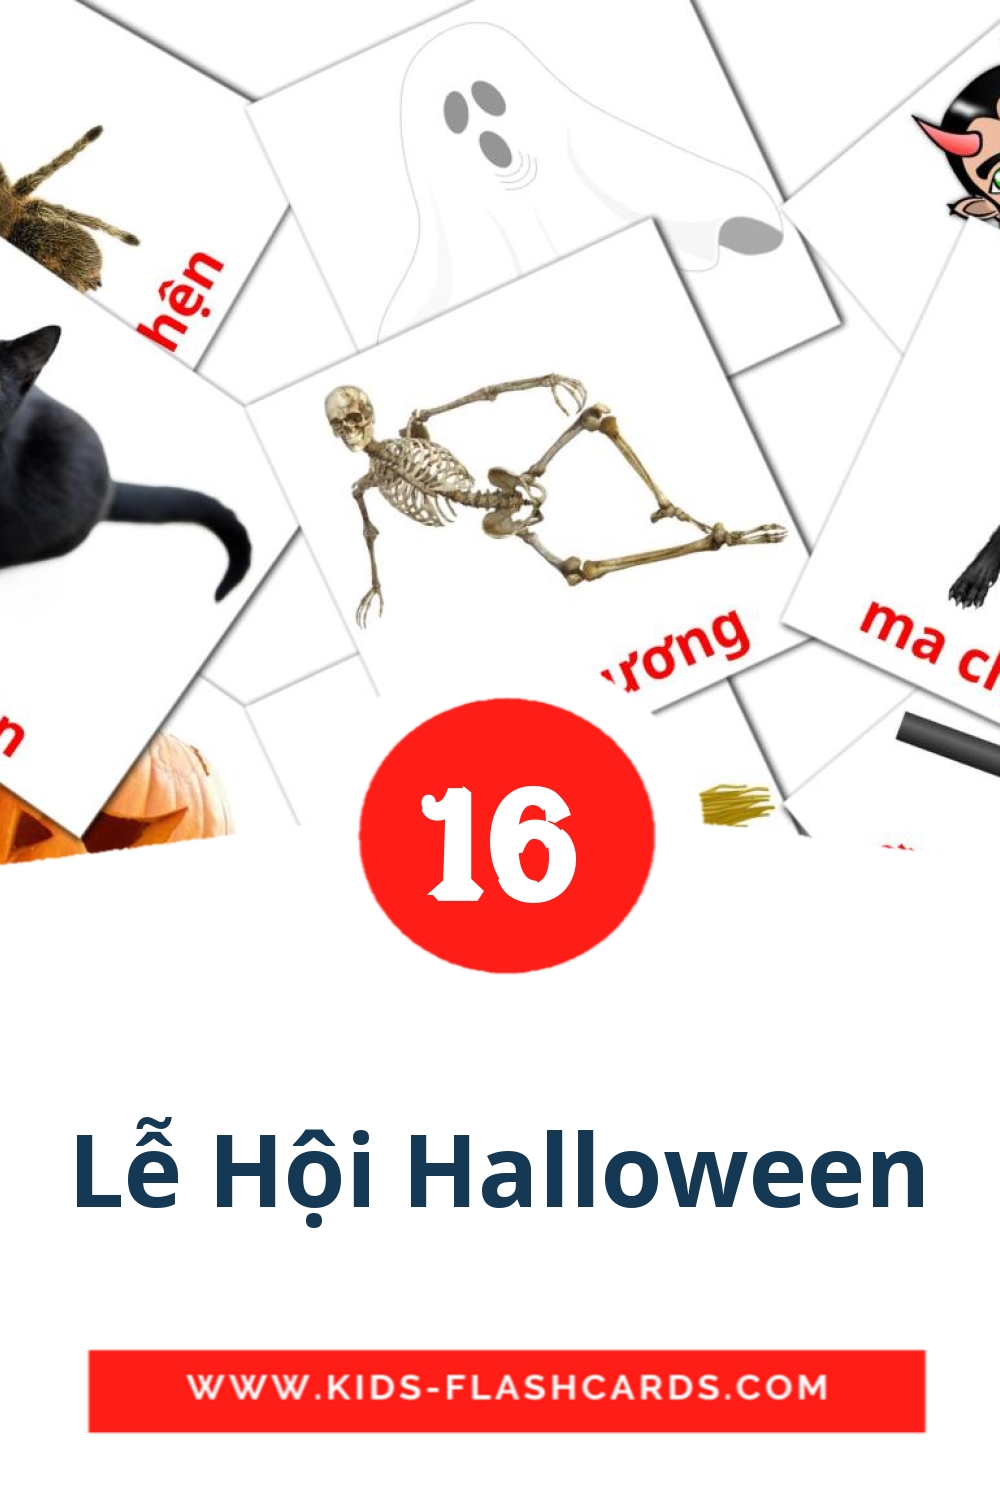 16 Lễ Hội Halloween fotokaarten voor kleuters in het vietnamese